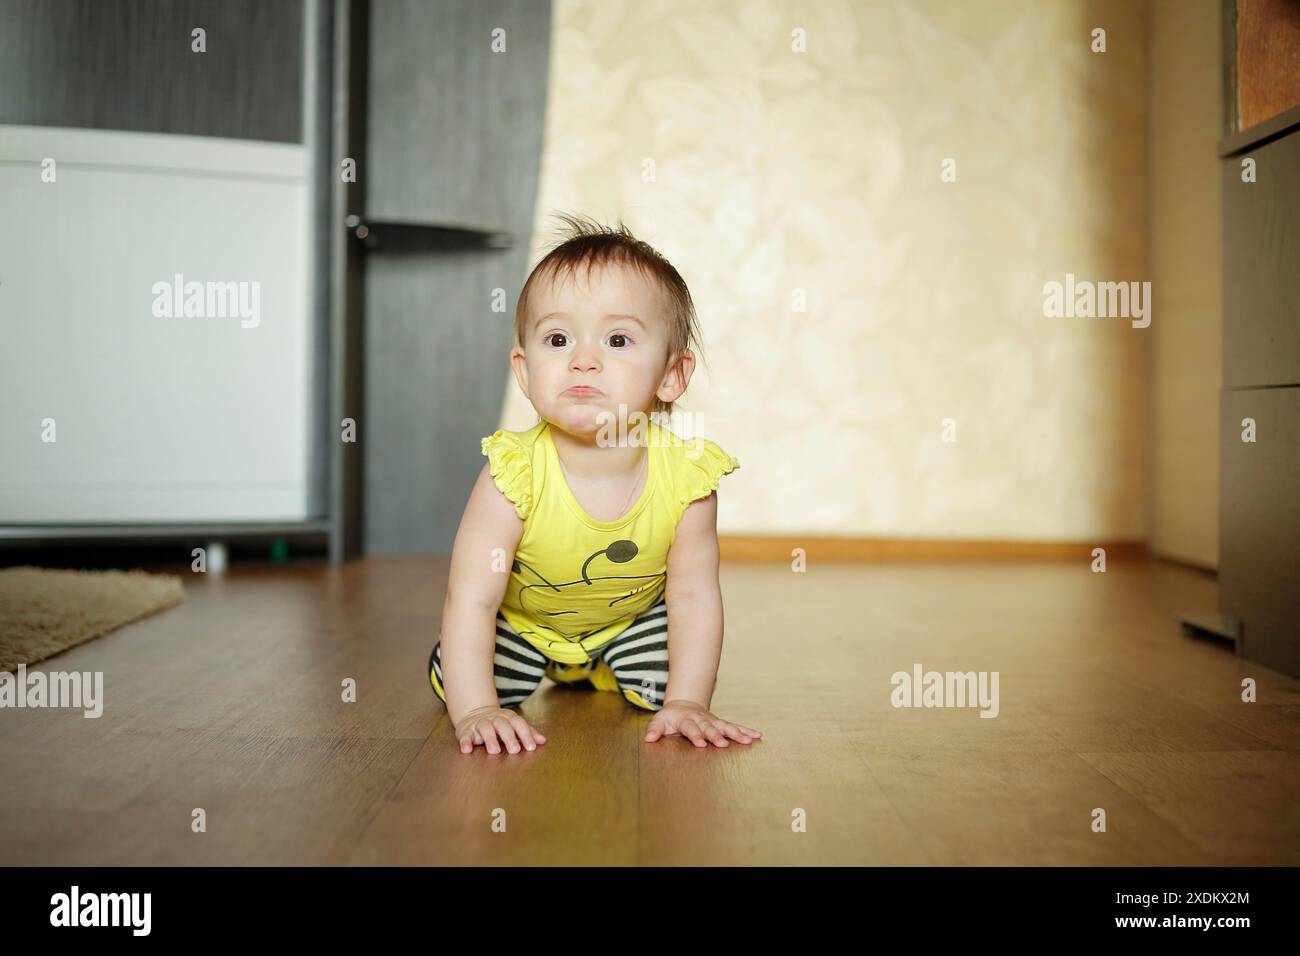 Ein Baby in gelbem Outfit und gestreifter Hose krabbelt auf einem Holzboden in einer gemütlichen Umgebung Stockfoto